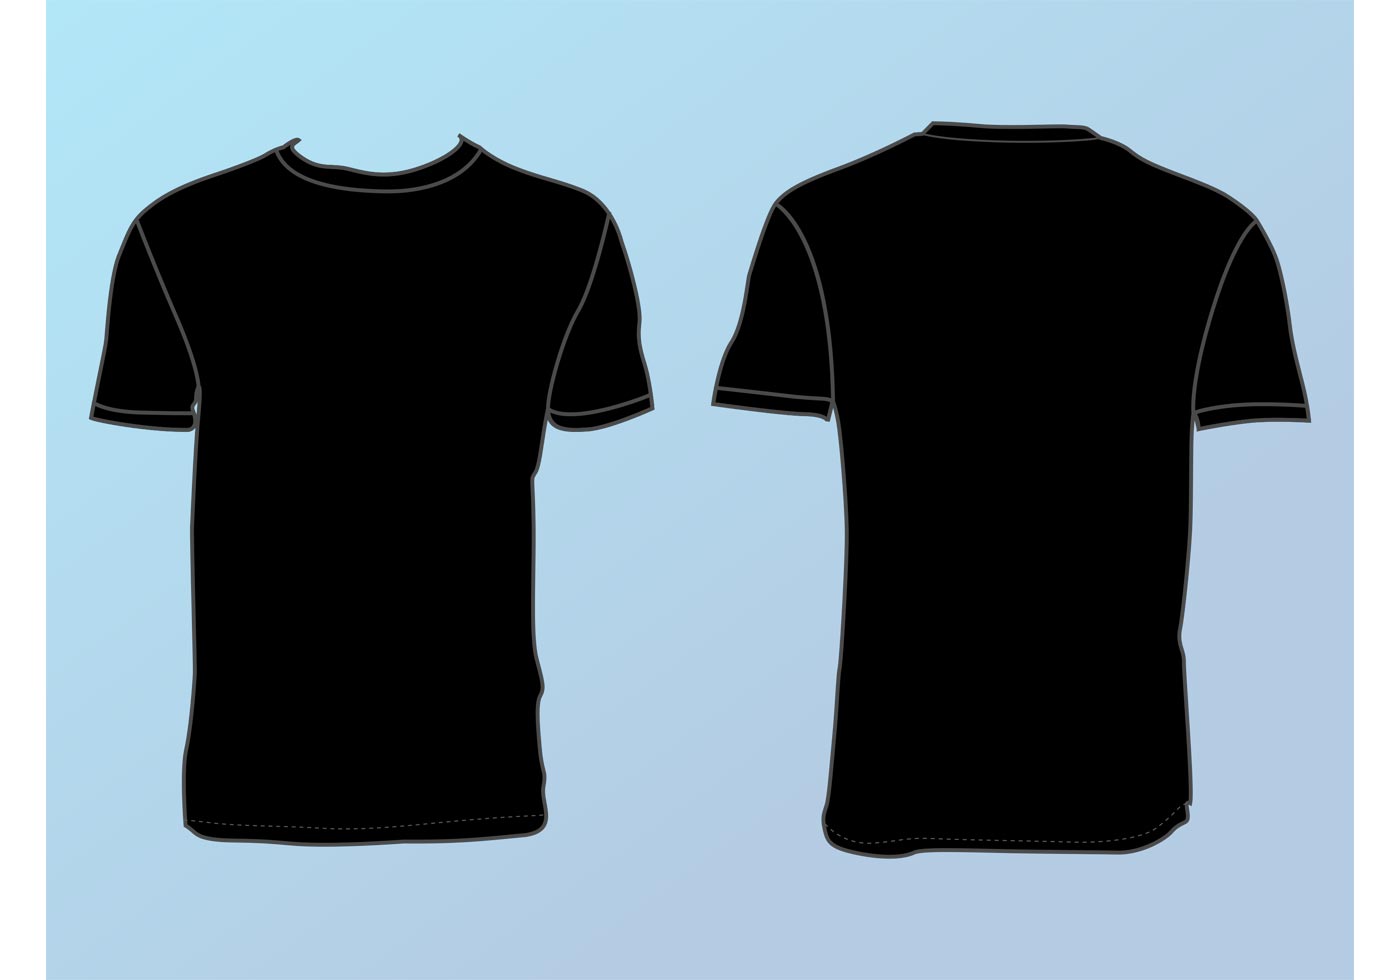 T Shirt Template Free Vector Art - (7001 Free Downloads)